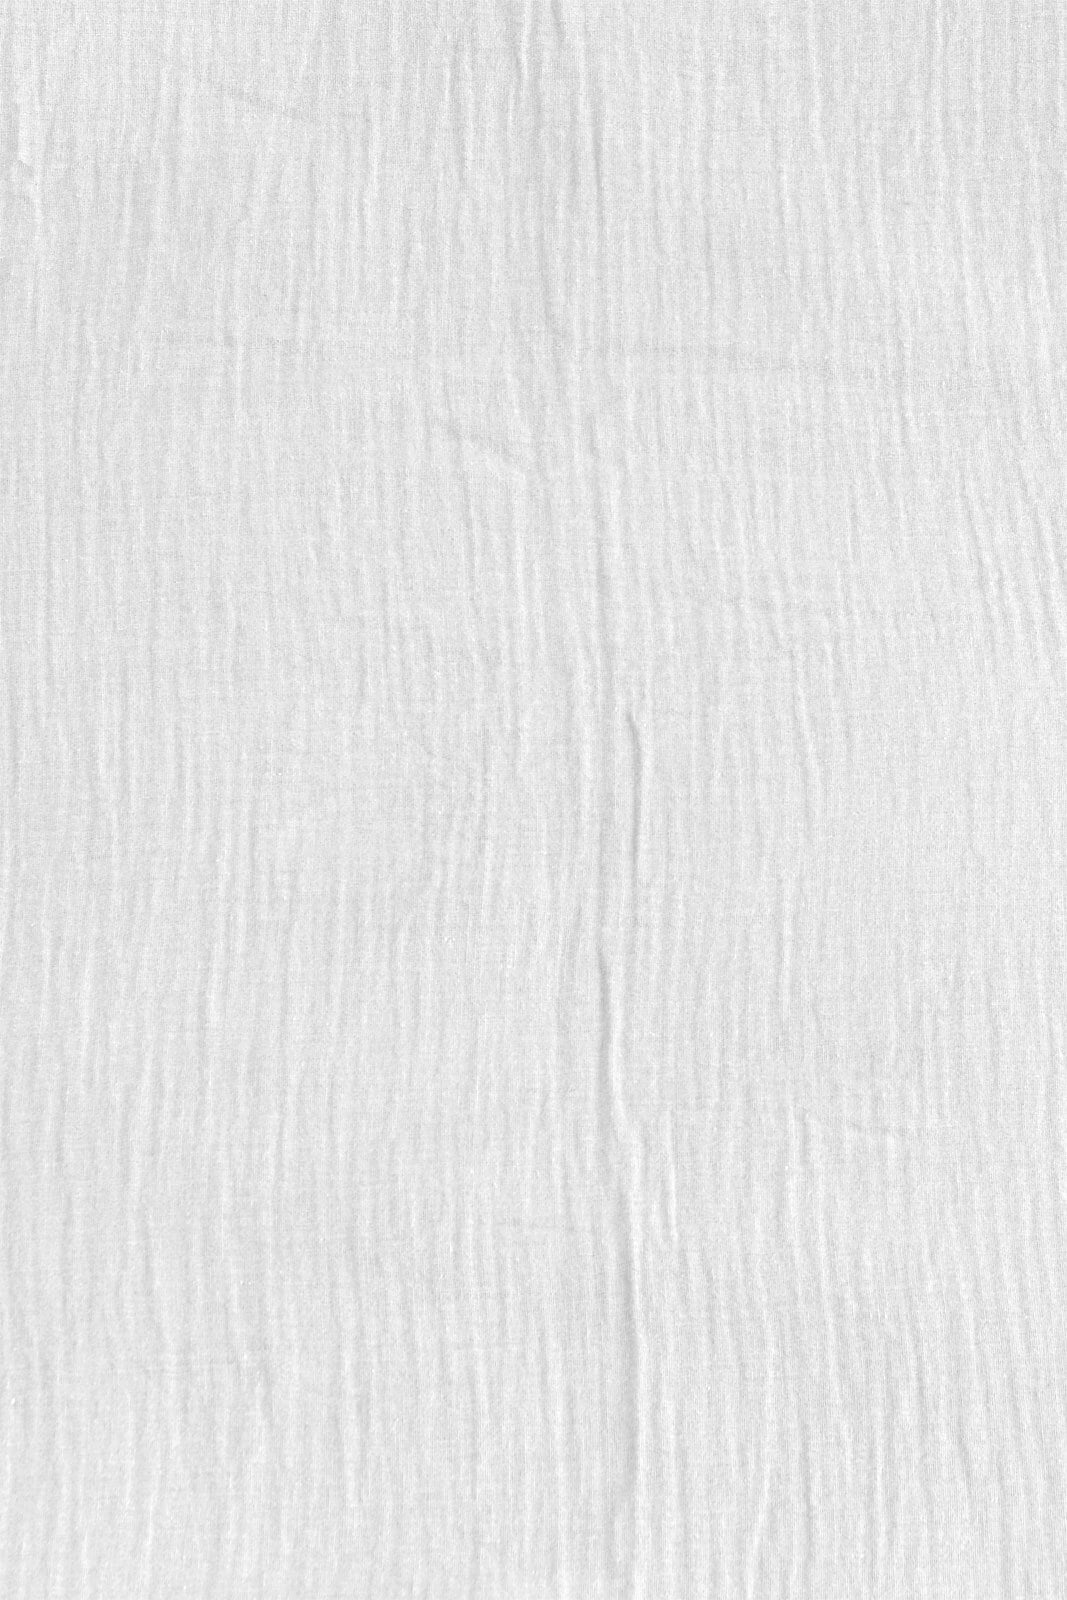 casaNOVA Musselin-Kissenhülle GRETA 45 x 45 cm weiß